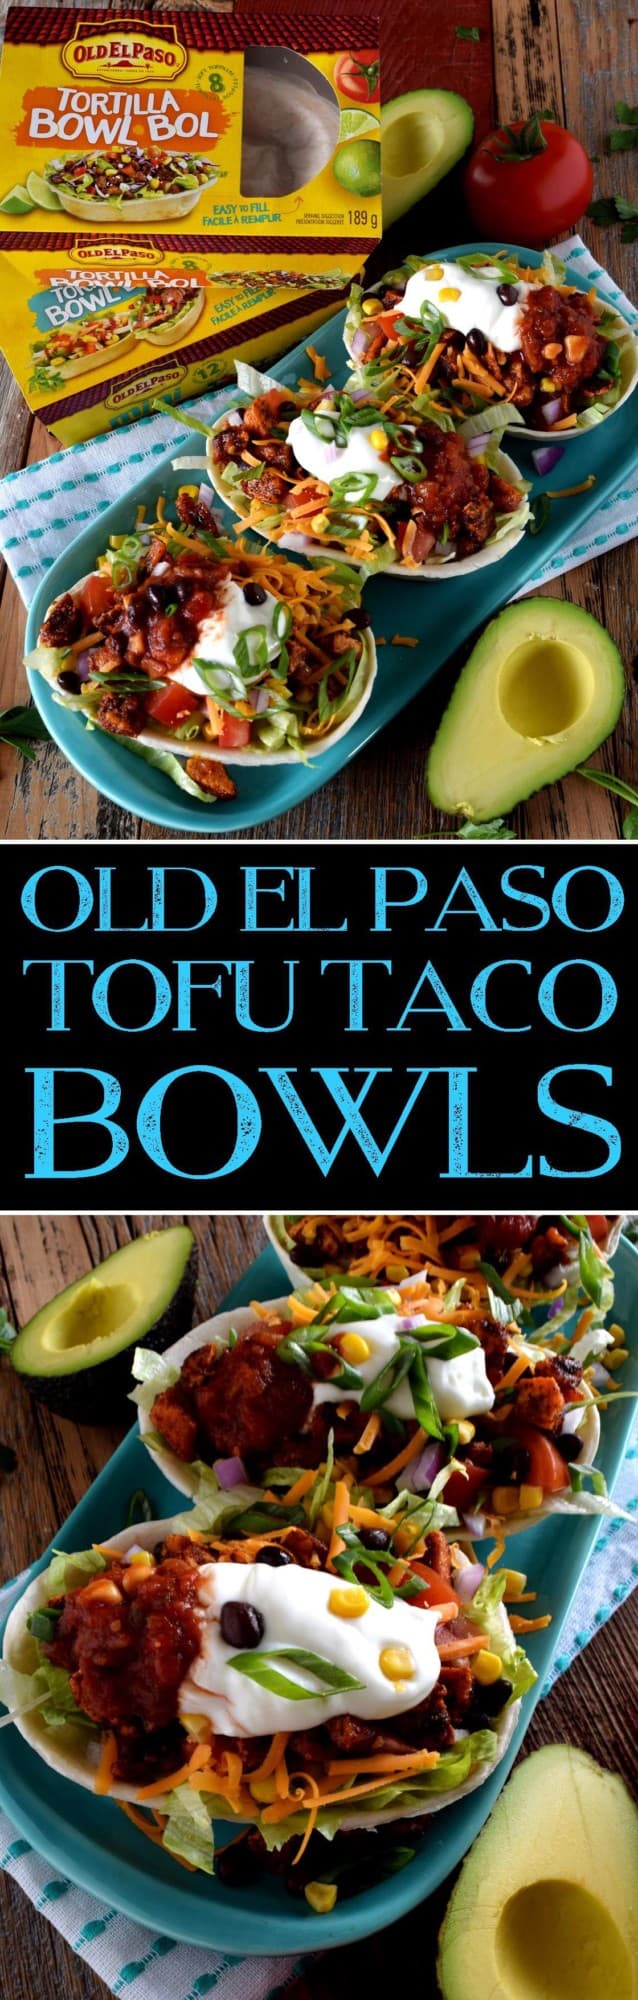 Old El Paso Tofu Taco Bowls